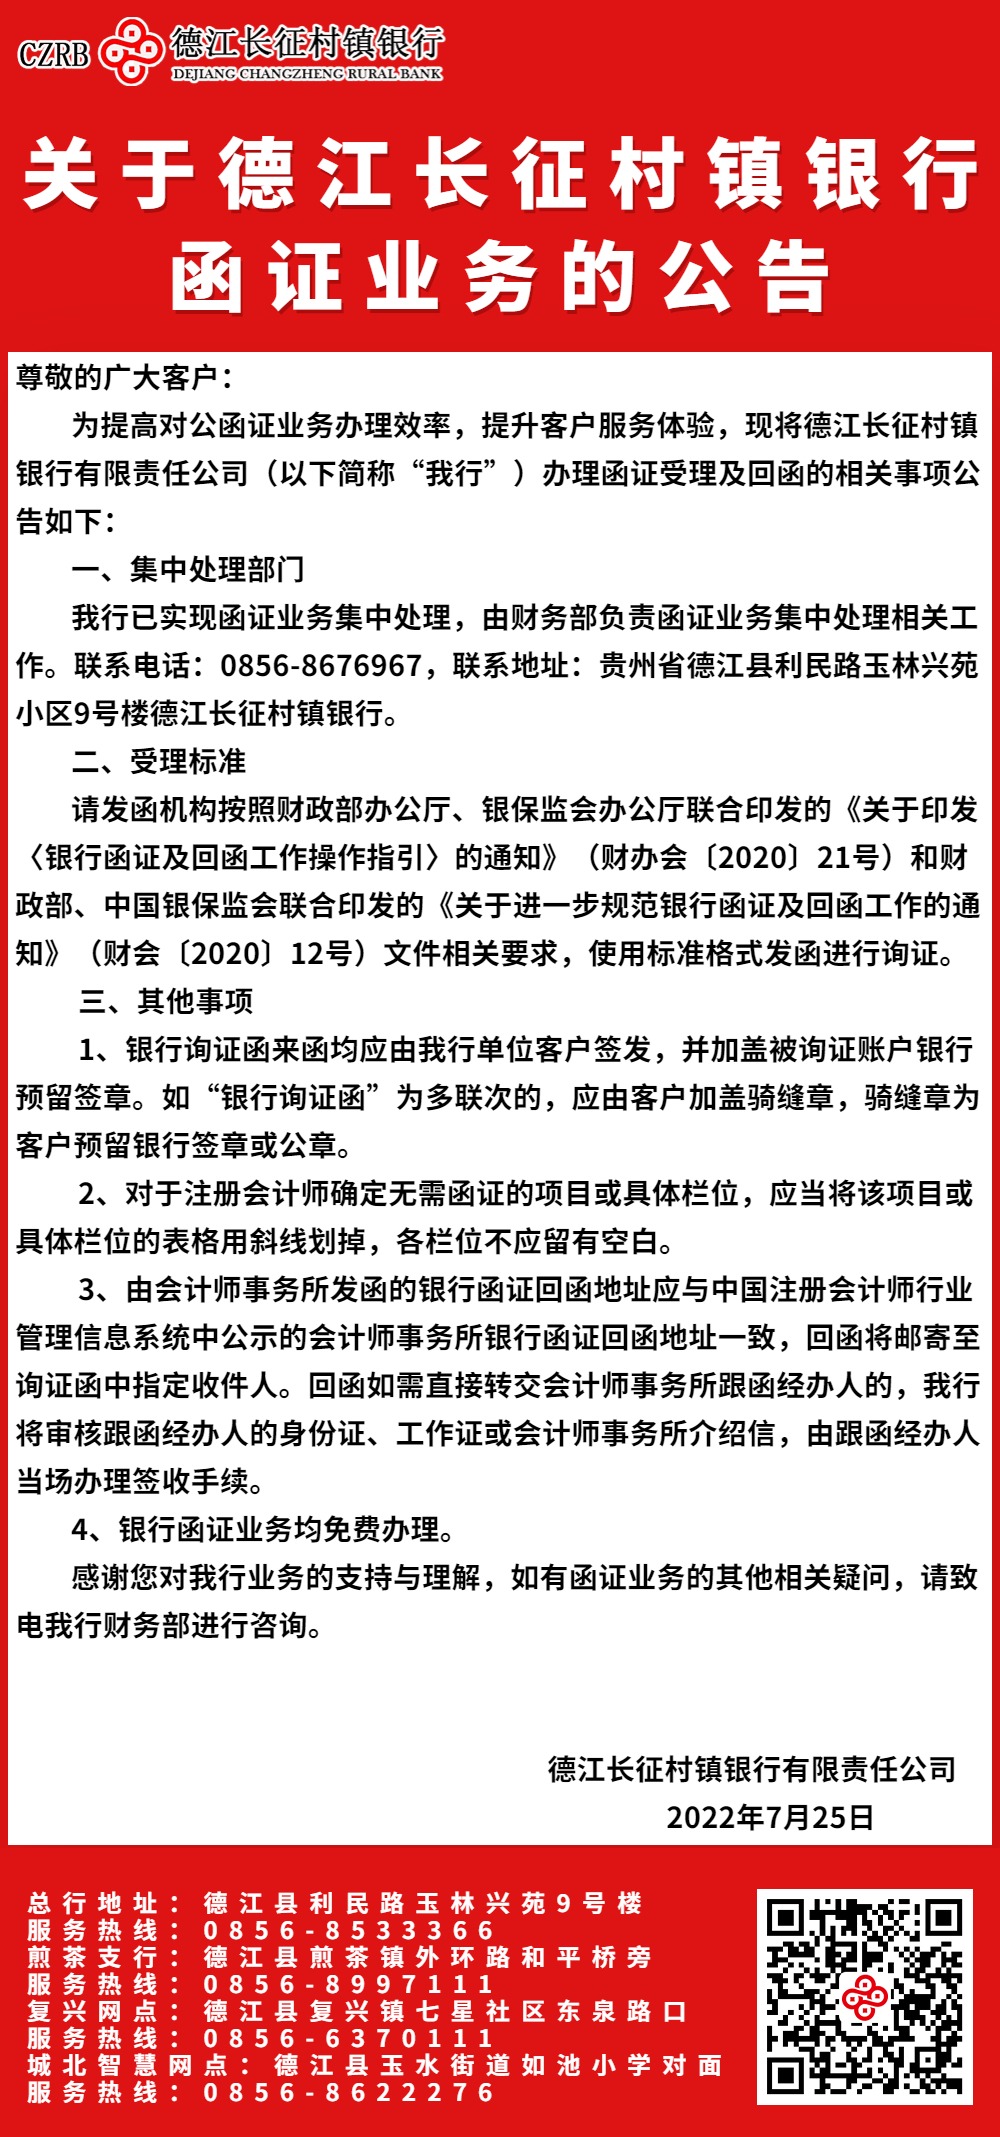 关于德江长征村镇银行函证业务的公告